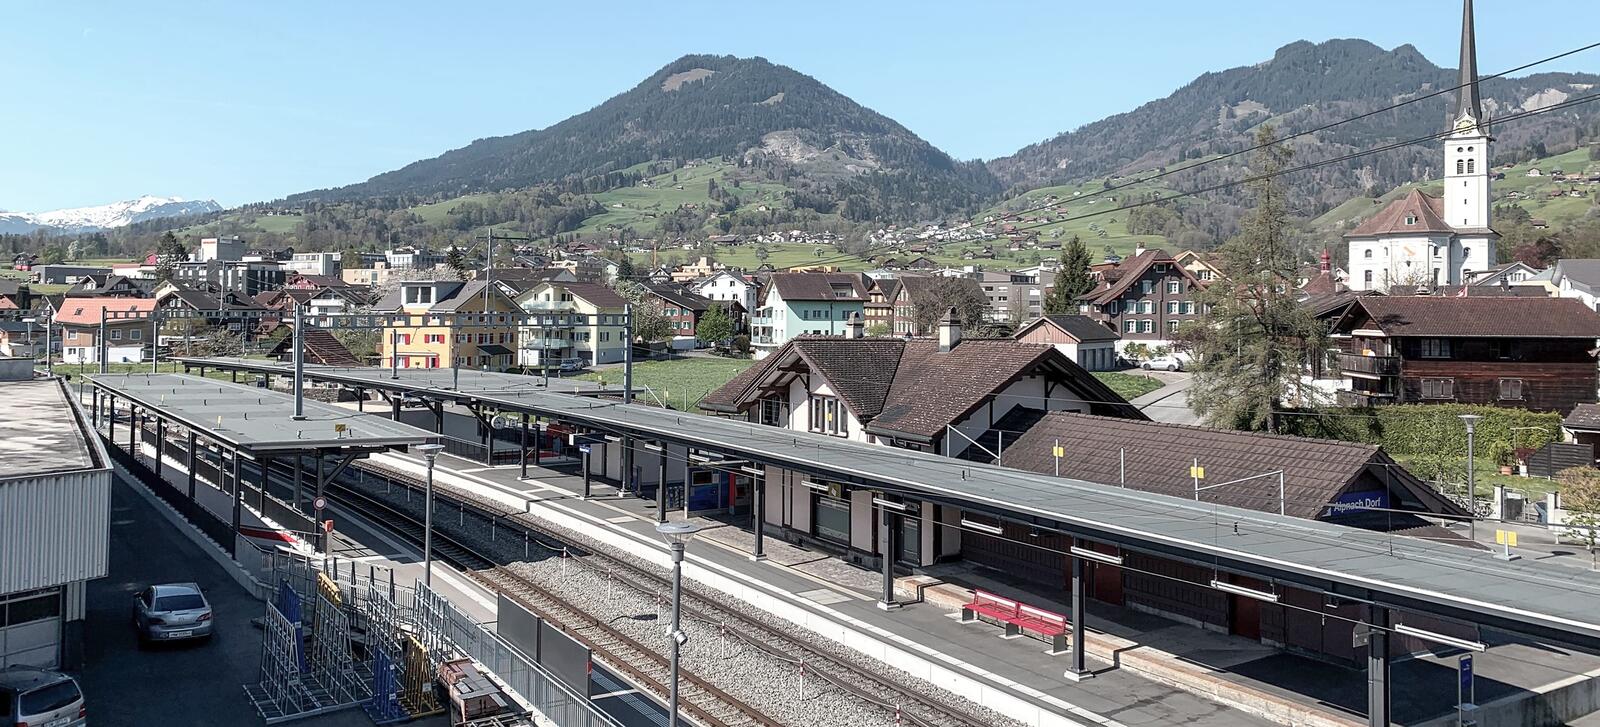 Neubau Bahnhof Alpnach